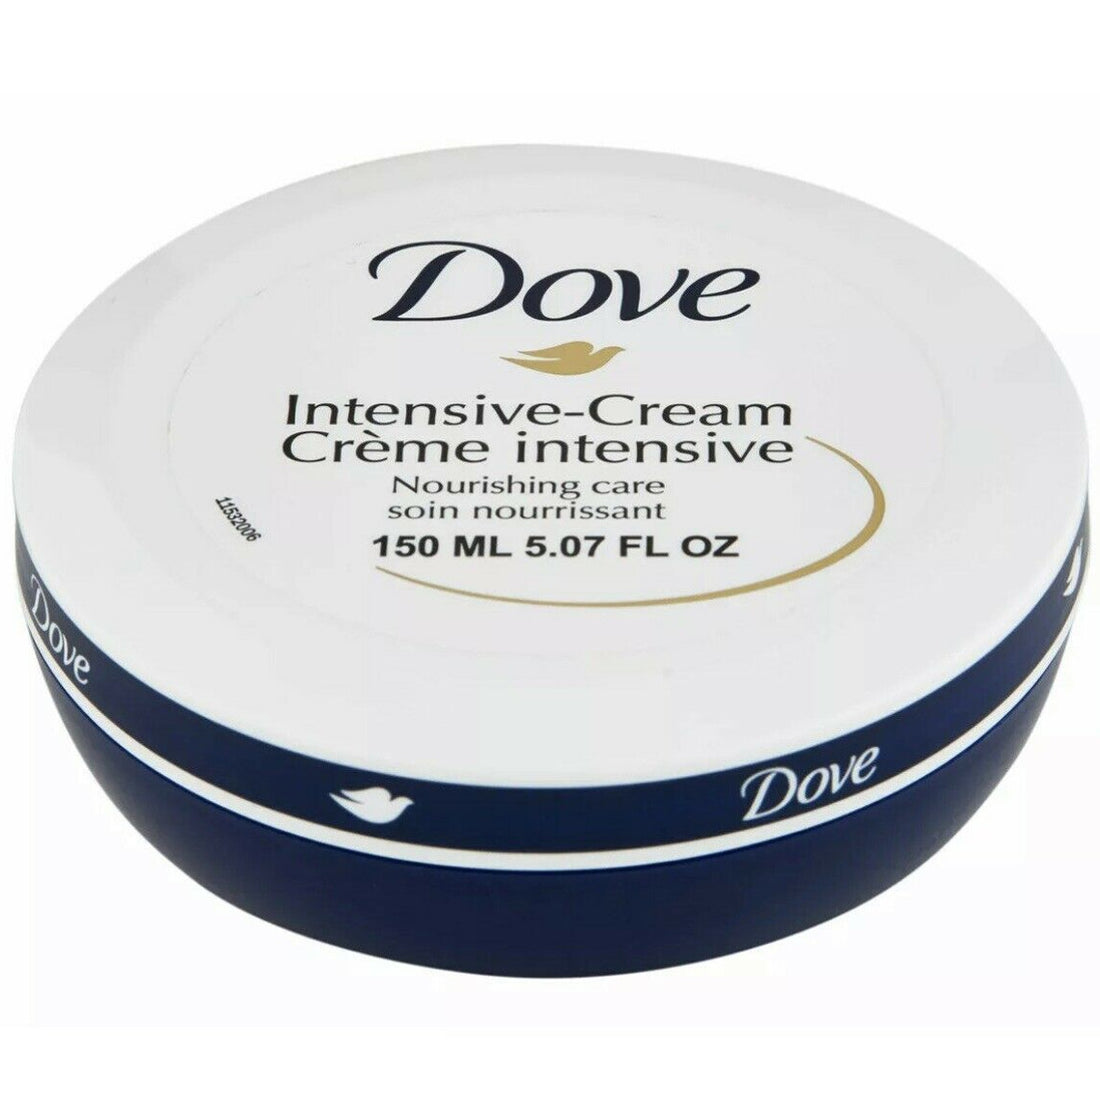 Dove Cream Intensive Care 150ml